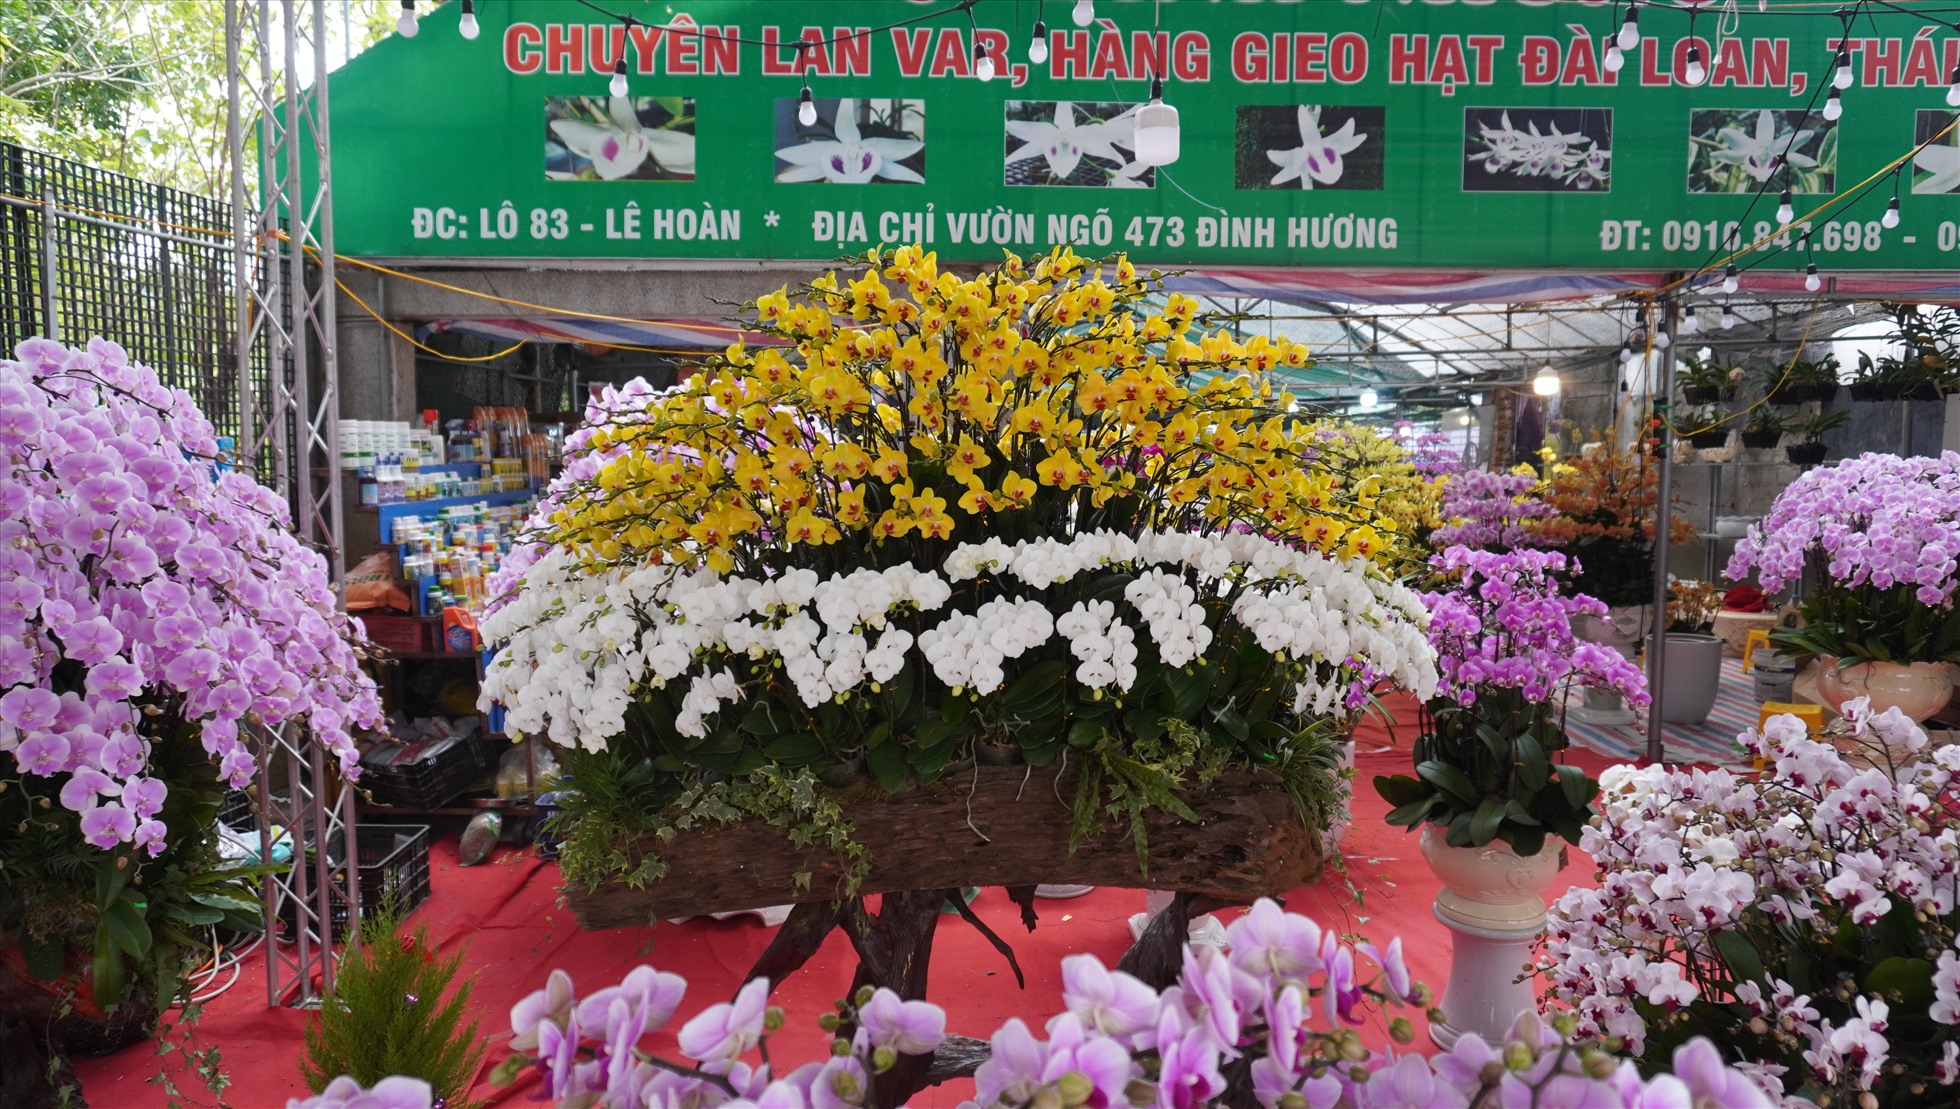 Chậu hoa lan Hồ Điệp được chủ quầy bán hoa (trên phố Lê Hoàn, TP.Thanh Hóa) chào bán với giá hơn 70 triệu đồng. Ảnh: Quách Du